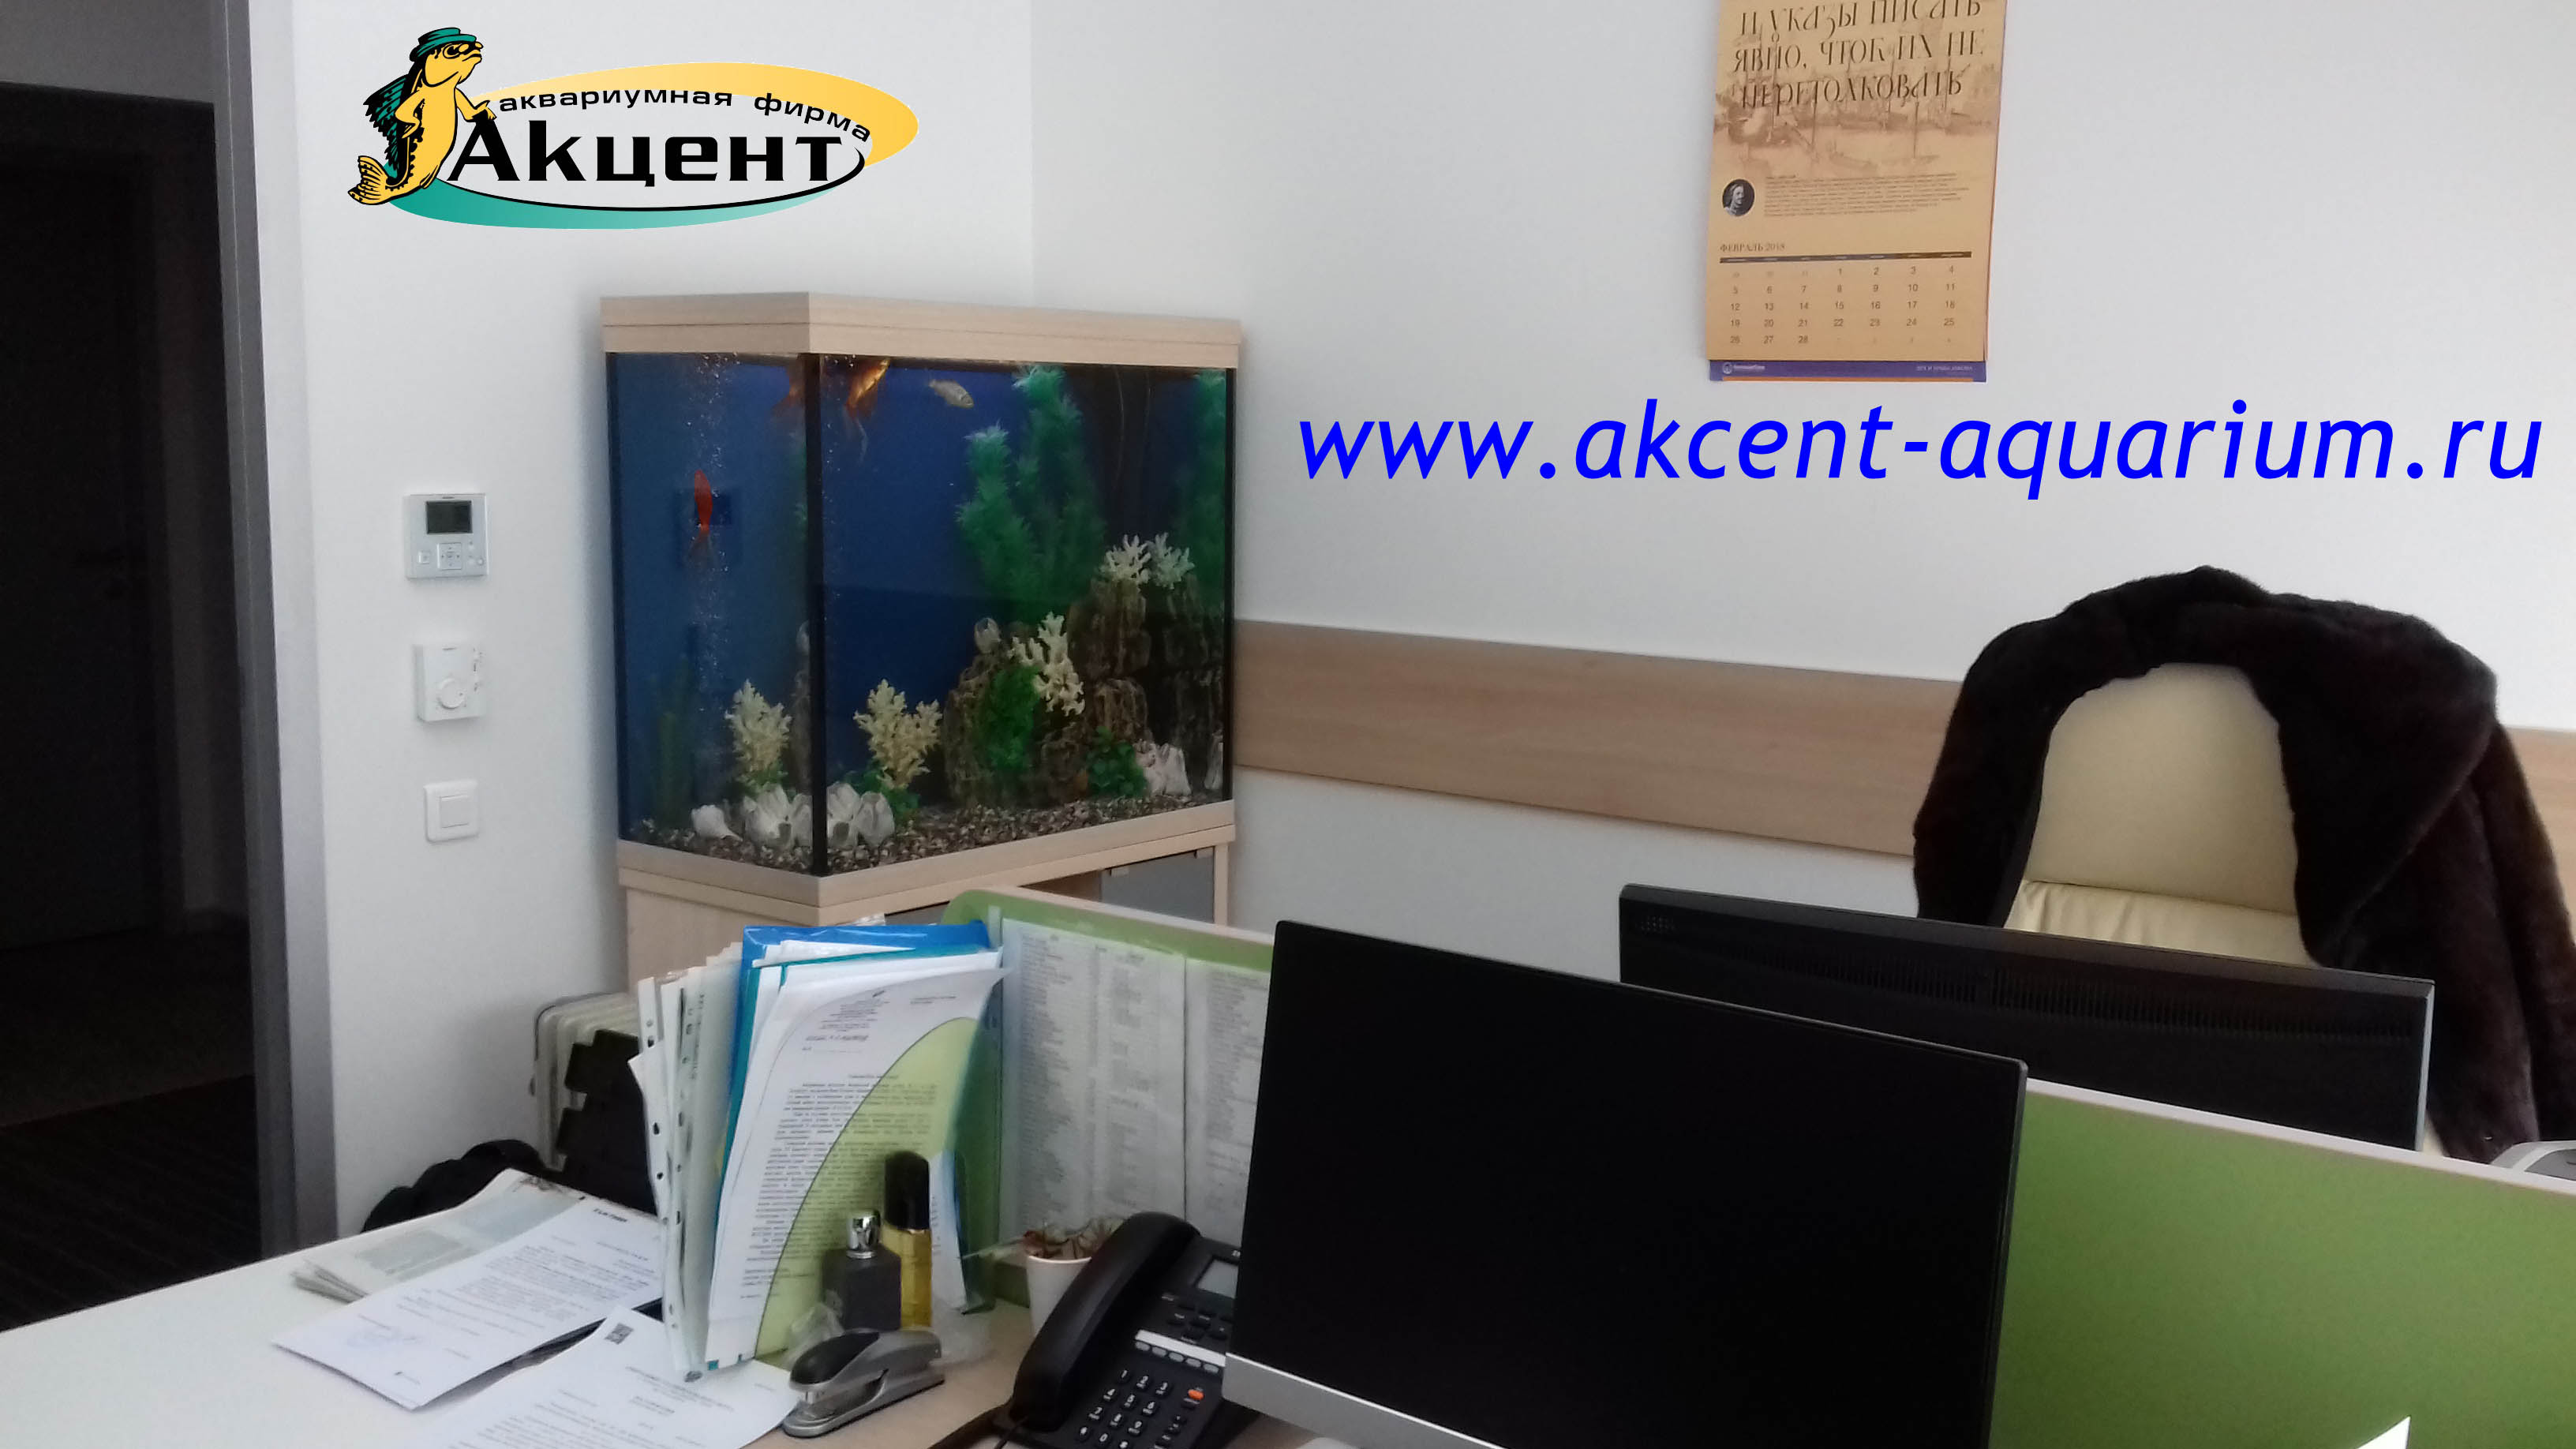 Акцент-аквариум аквариум 300 литров,офис